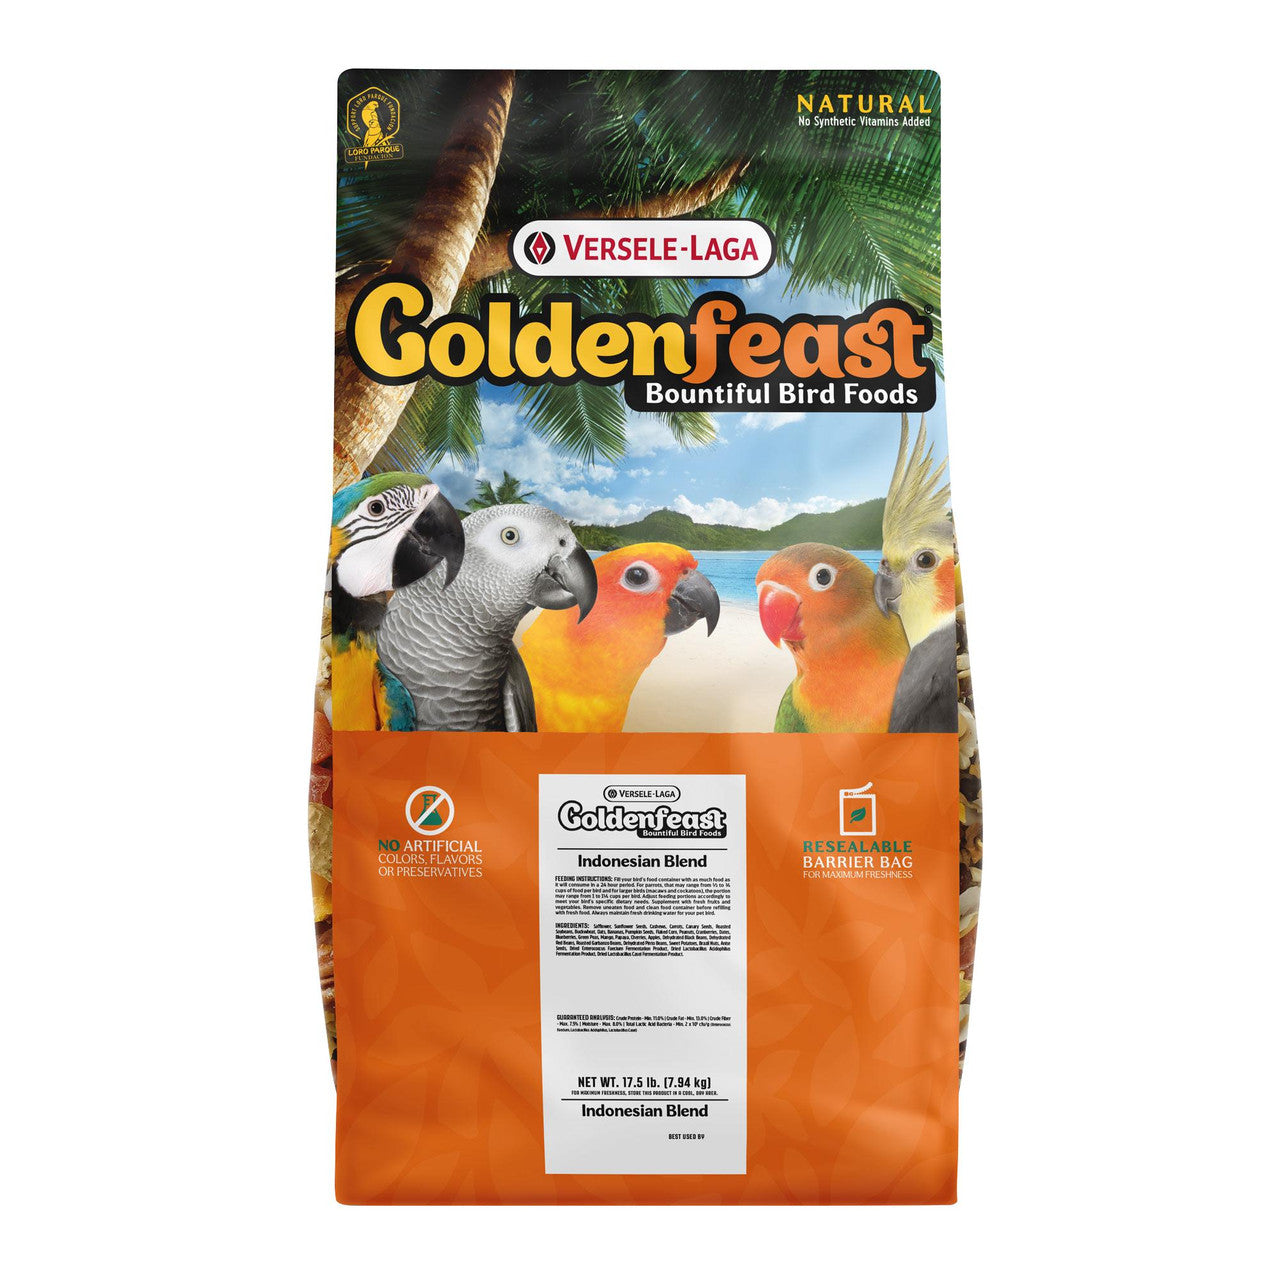 Goldenfeast Indonesian Blend Bird Food 17.5 lb 046706822324